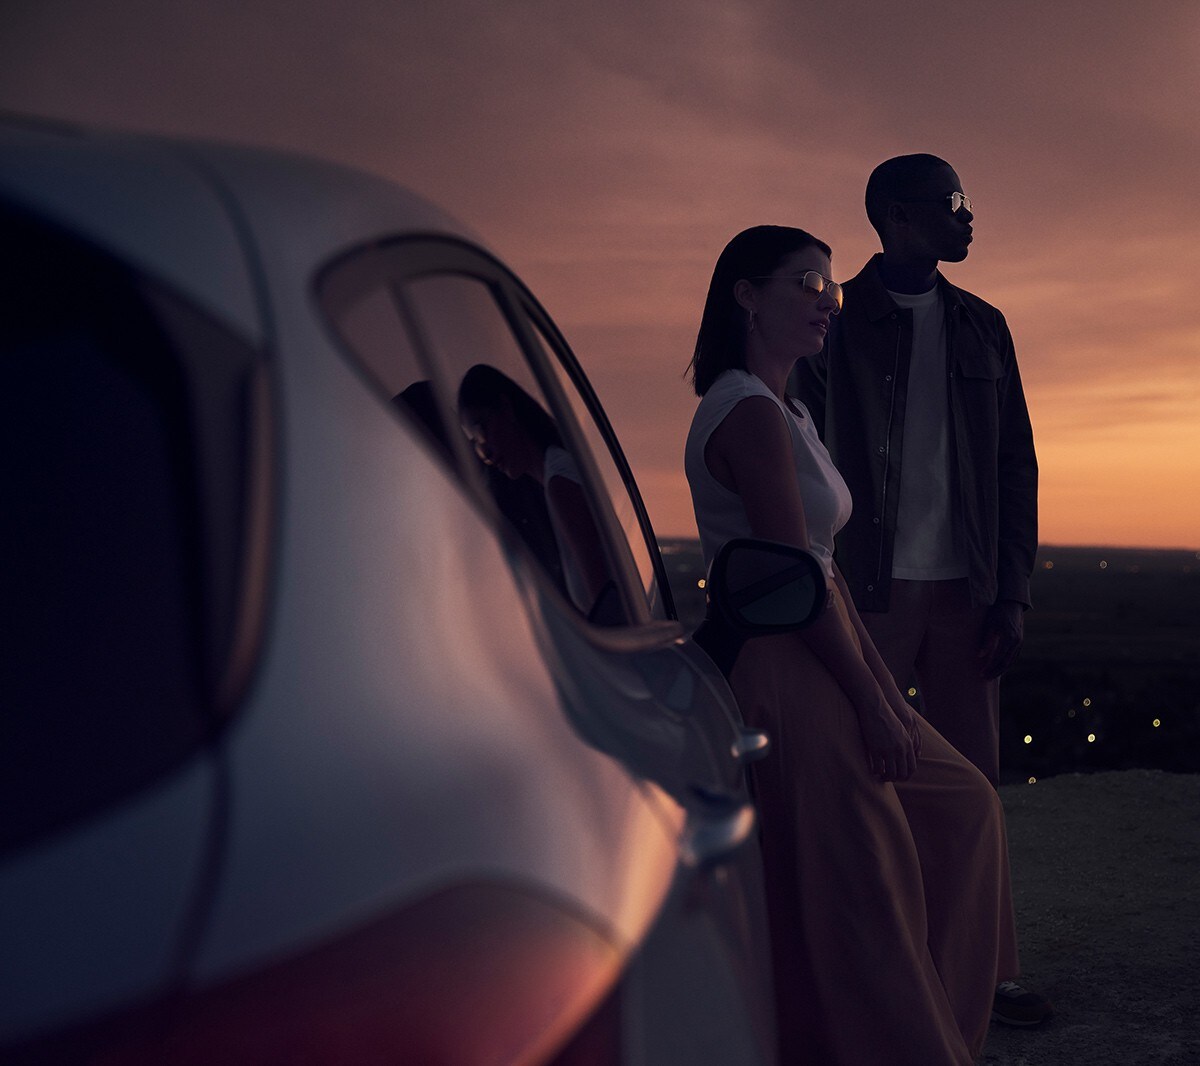 Ford Fiesta in Blau. Heckansicht, im Sonnenuntergang mit zwei Personen im Hintergrund.